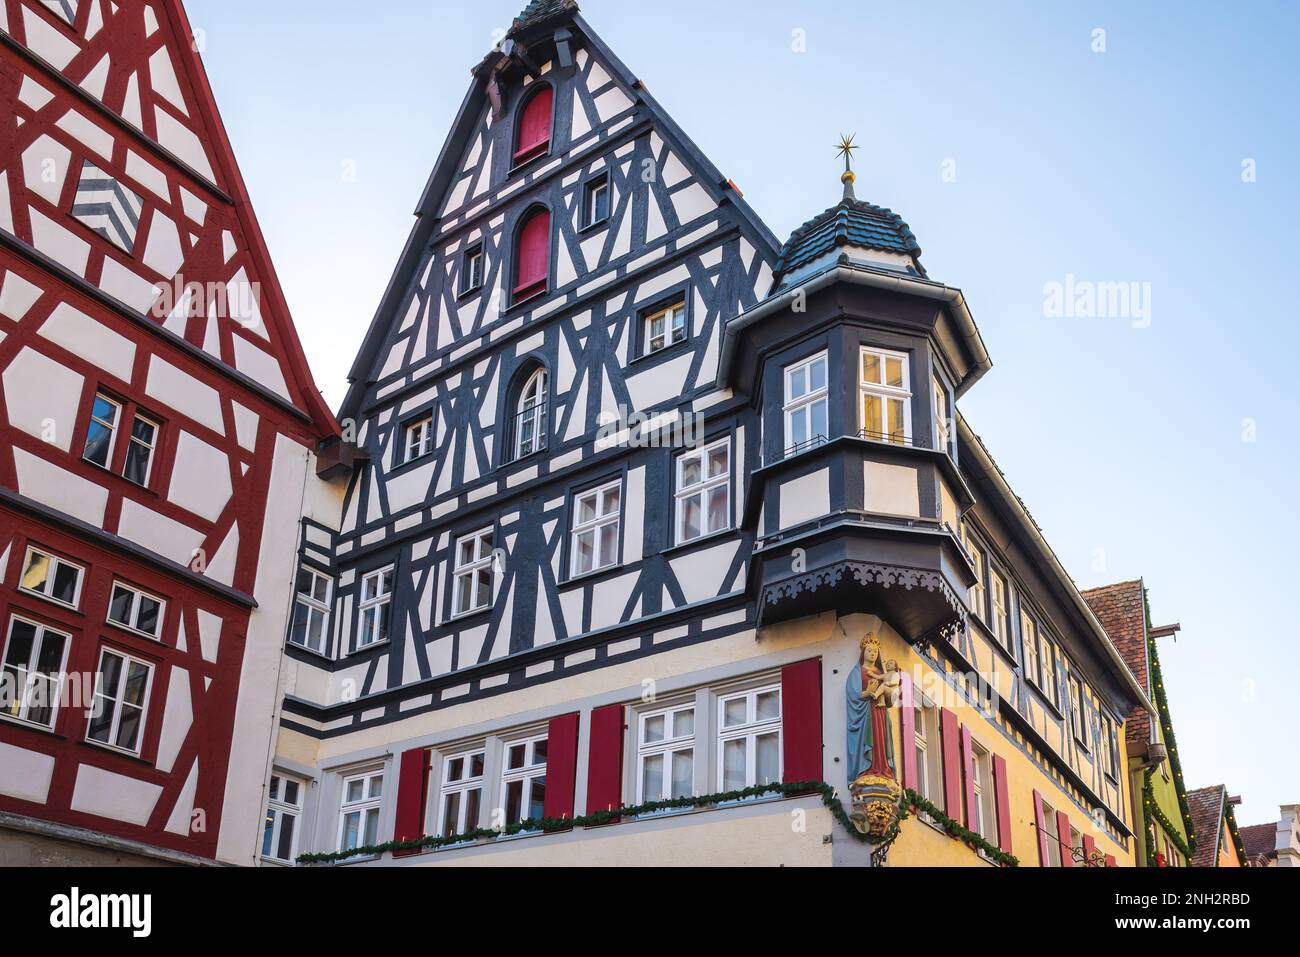 Fachwerkhäuser am Marktplatz - Rothenburg ob der Tauber, Bayern Stockfoto